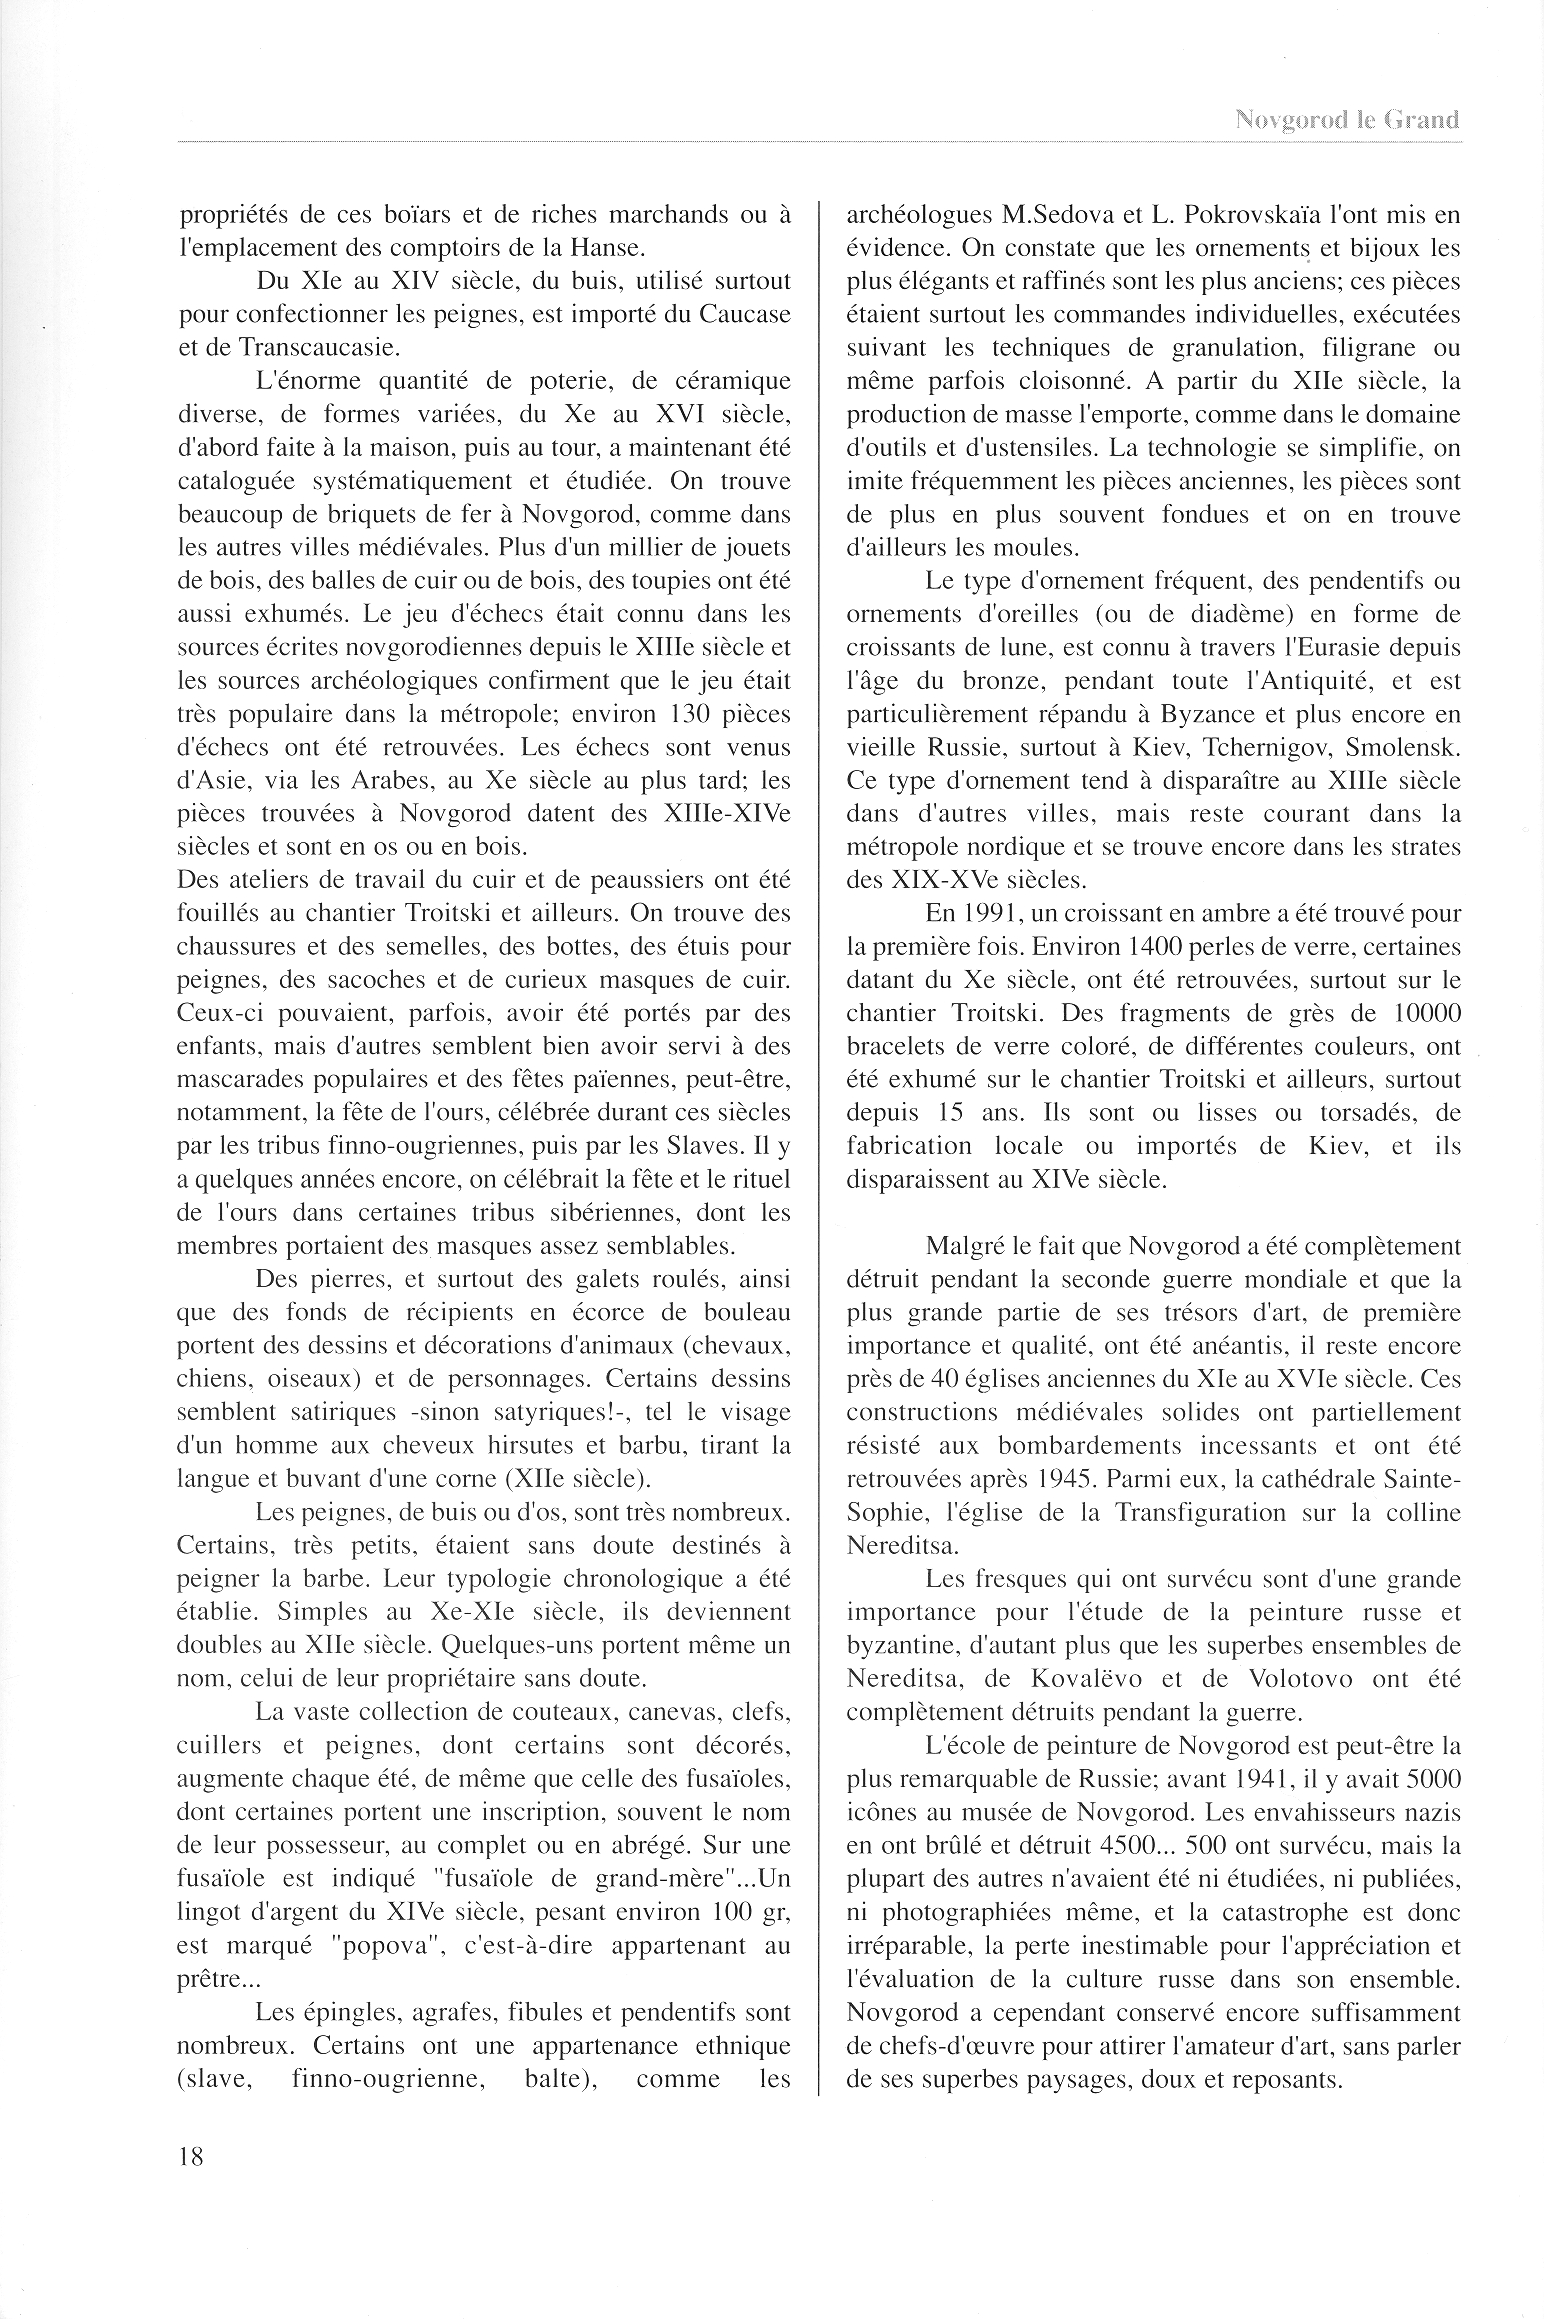 FPPR Revue 01 2002 20. Page 18. Novgorod le Grand. Anatomie d|une métropole médiévale russe par Jean Blankoff